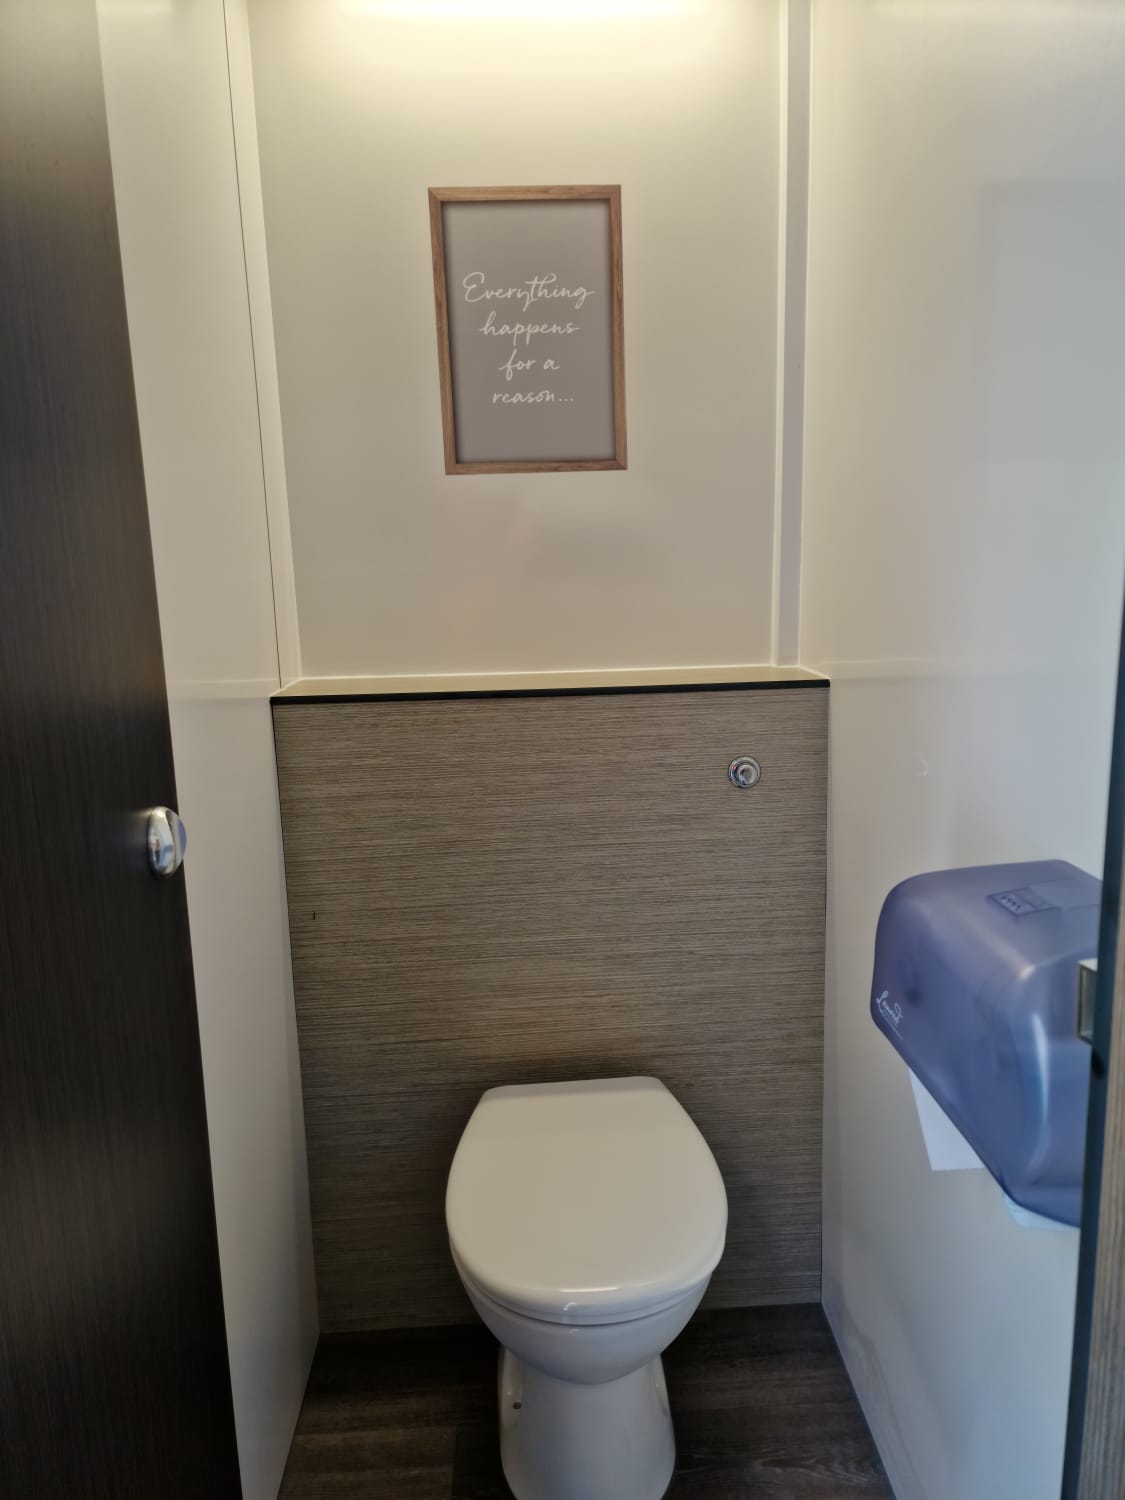 Inside luxury toilet